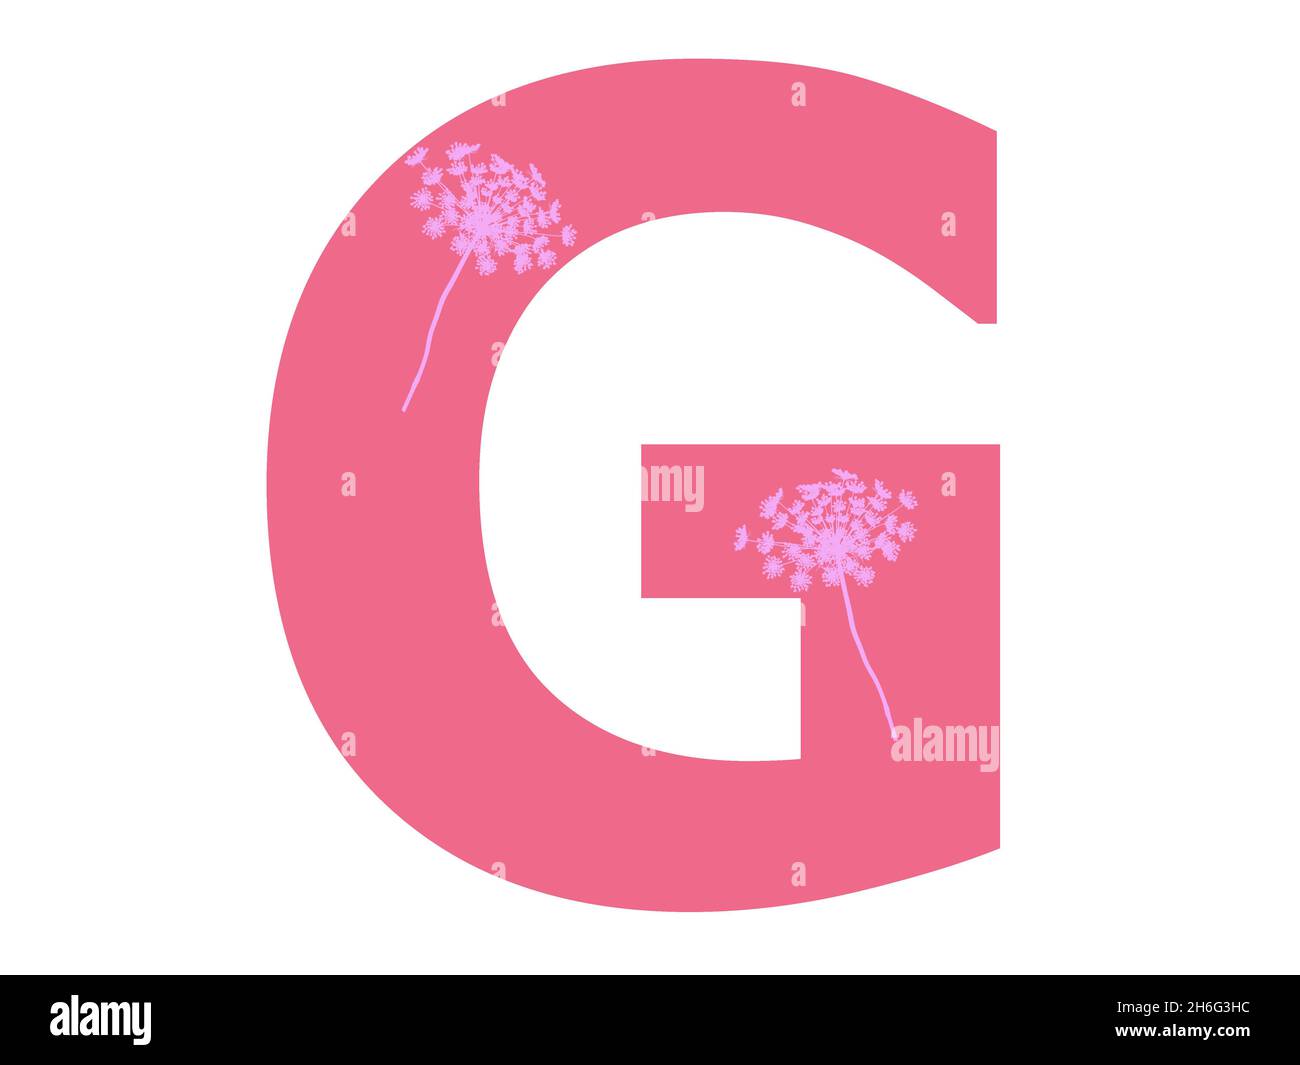 Lettera G dell'alfabeto realizzata con una silhouette di fiori rosa su sfondo rosa scuro, la lettera è isolata su sfondo bianco Foto Stock